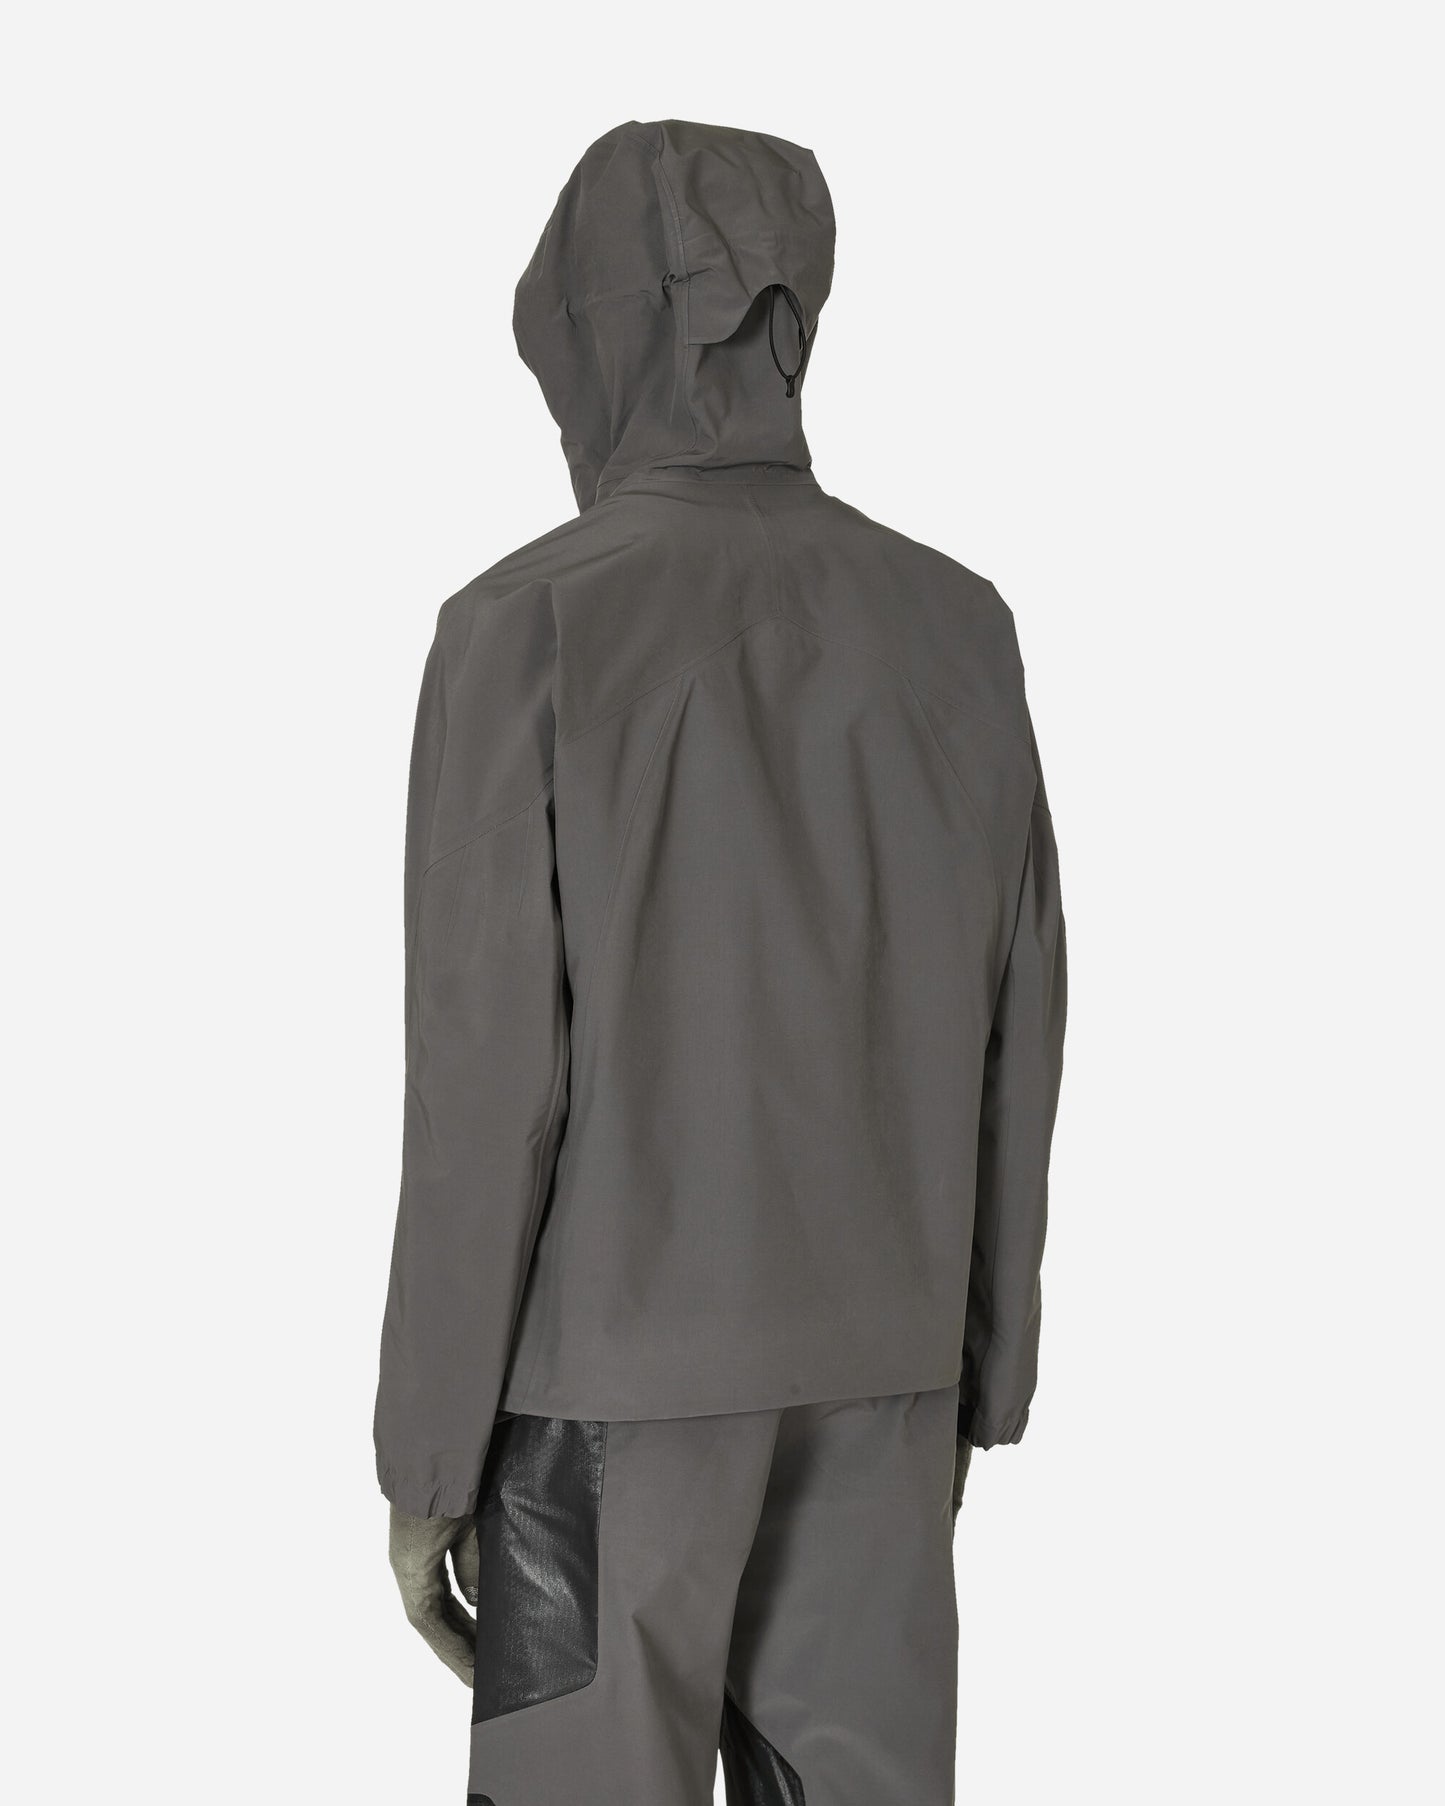 _J.L-A.L_ Constructivism Jacket Grey Coats and Jackets Down Jackets JBMW001FA01 GRY0001